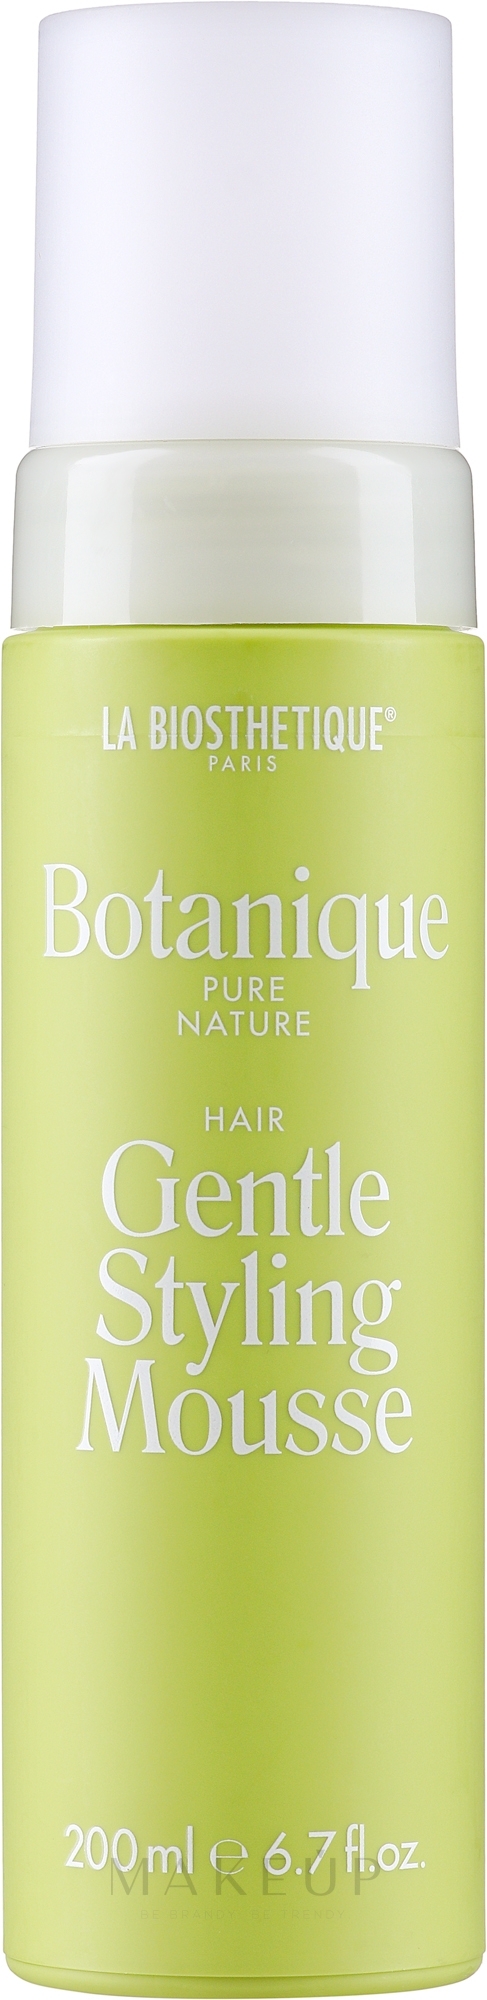 Sanfte glättende stärkende und pflegende Haarstylingmousse - La Biosthetique Botanique Pure Nature Gentle Styling Mousse — Bild 200 ml